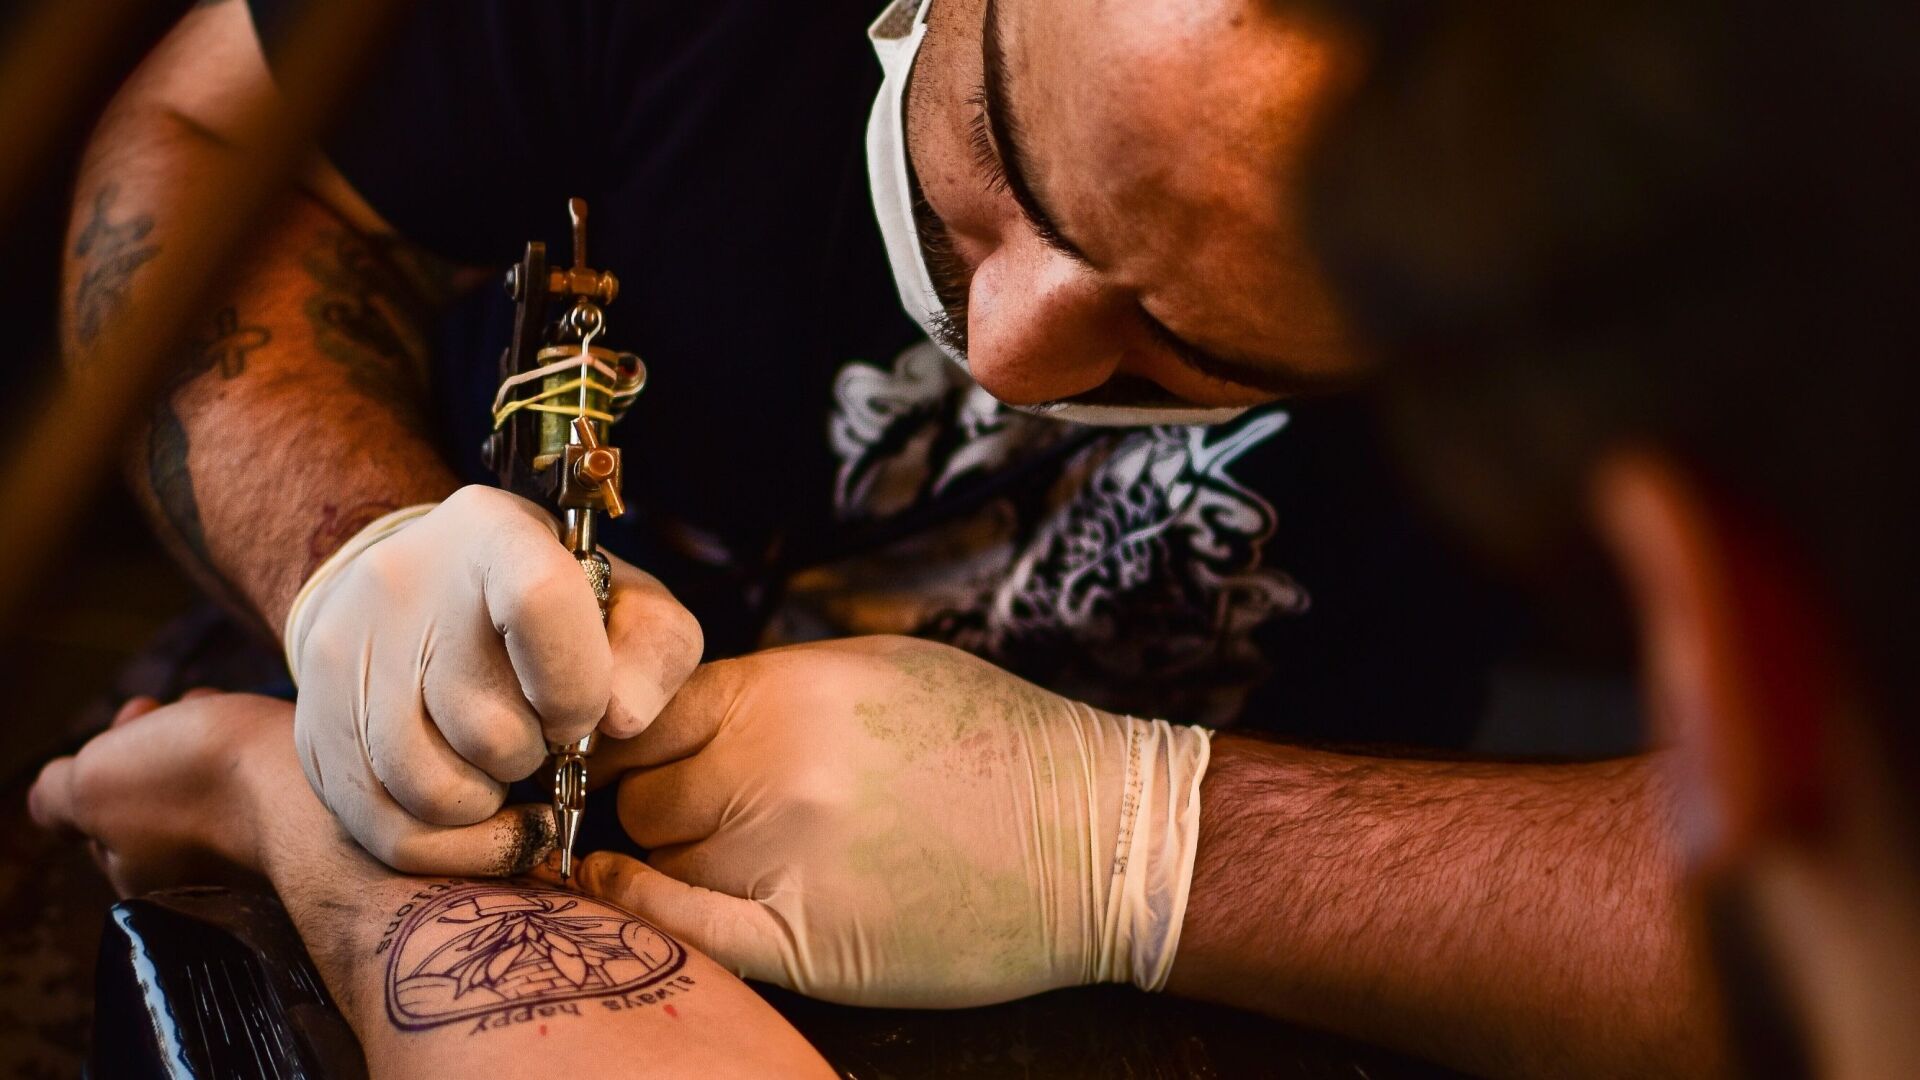 Tat2X Interview with Spokane Tattoo Artist Andrew Sussman